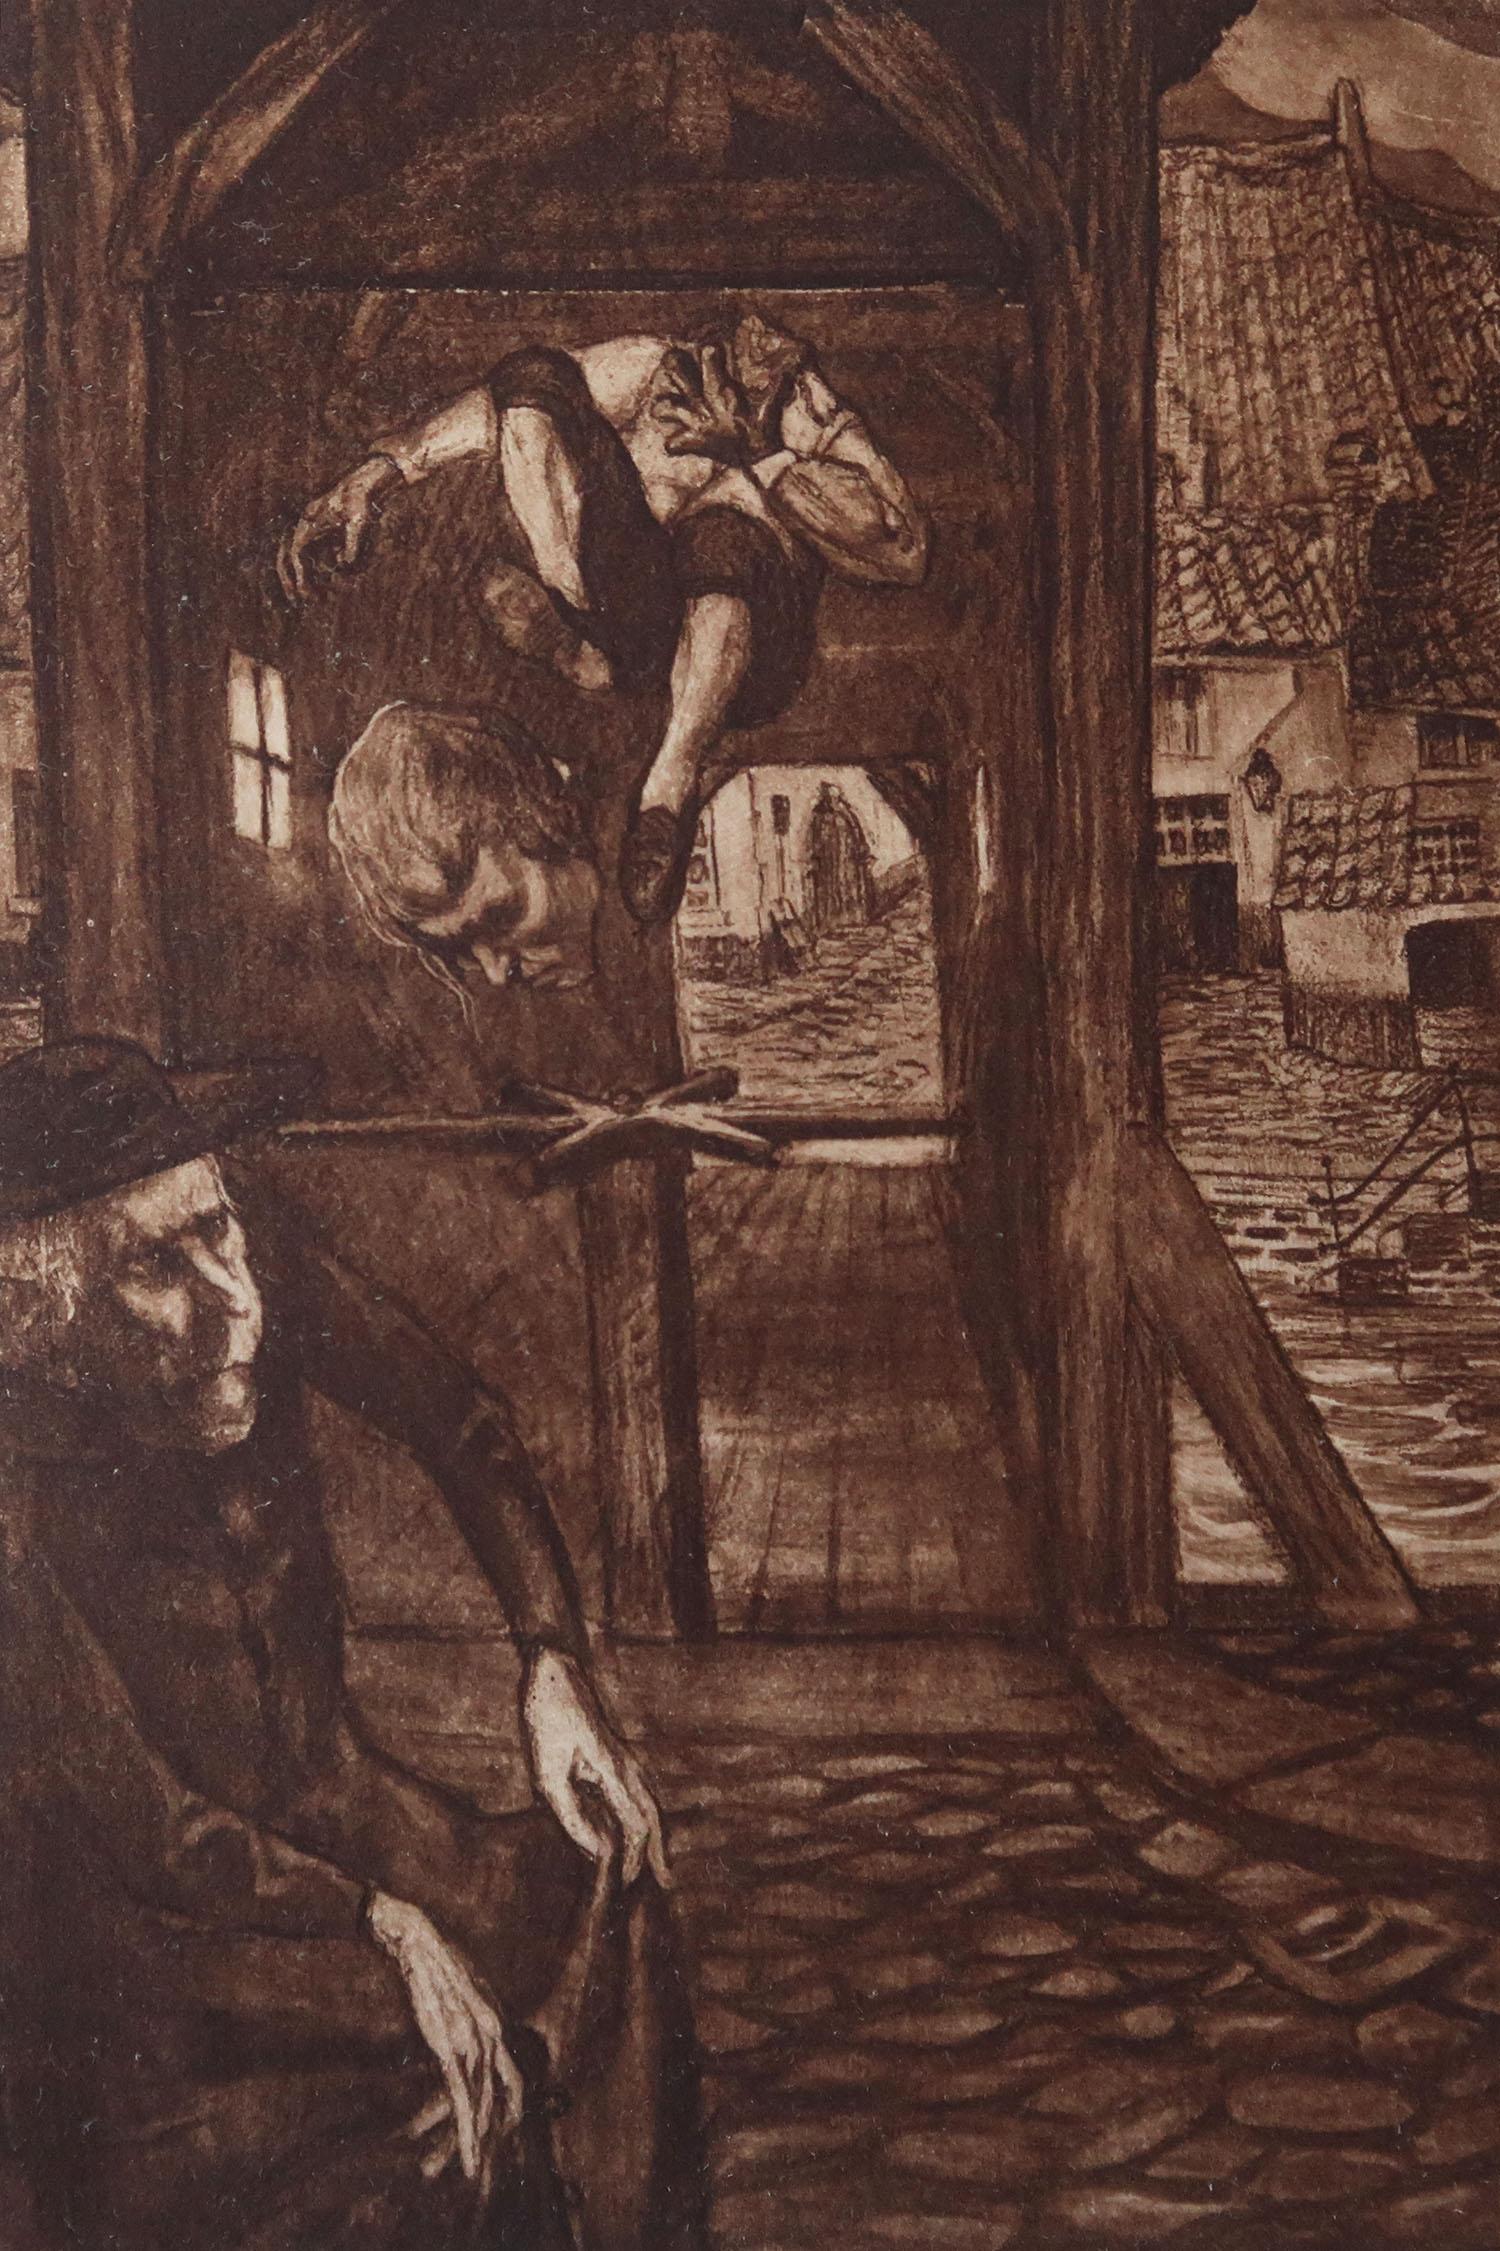 Image sensationnelle de Frederick Simpson Coburn.

Dans le style de l'un de mes artistes préférés, Goya.

Photogravure

Edition limitée à 300 exemplaires. C'est le numéro 84.

Extrait des Œuvres complètes d'Edgar Allen Poe.

Publié par